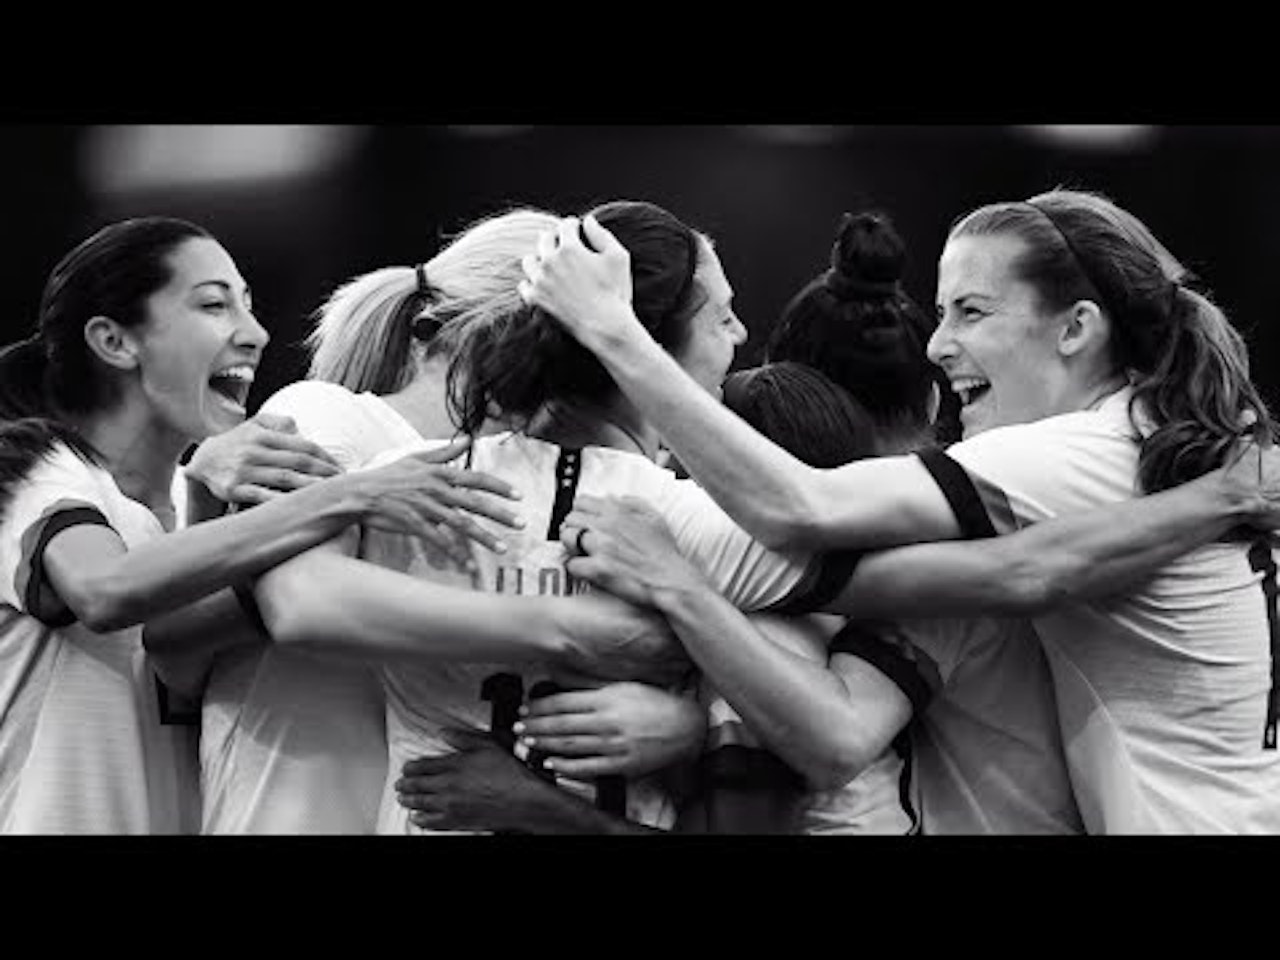 Nike muda gênero do brasão da Holanda para promover time feminino -  Publicitários Criativos